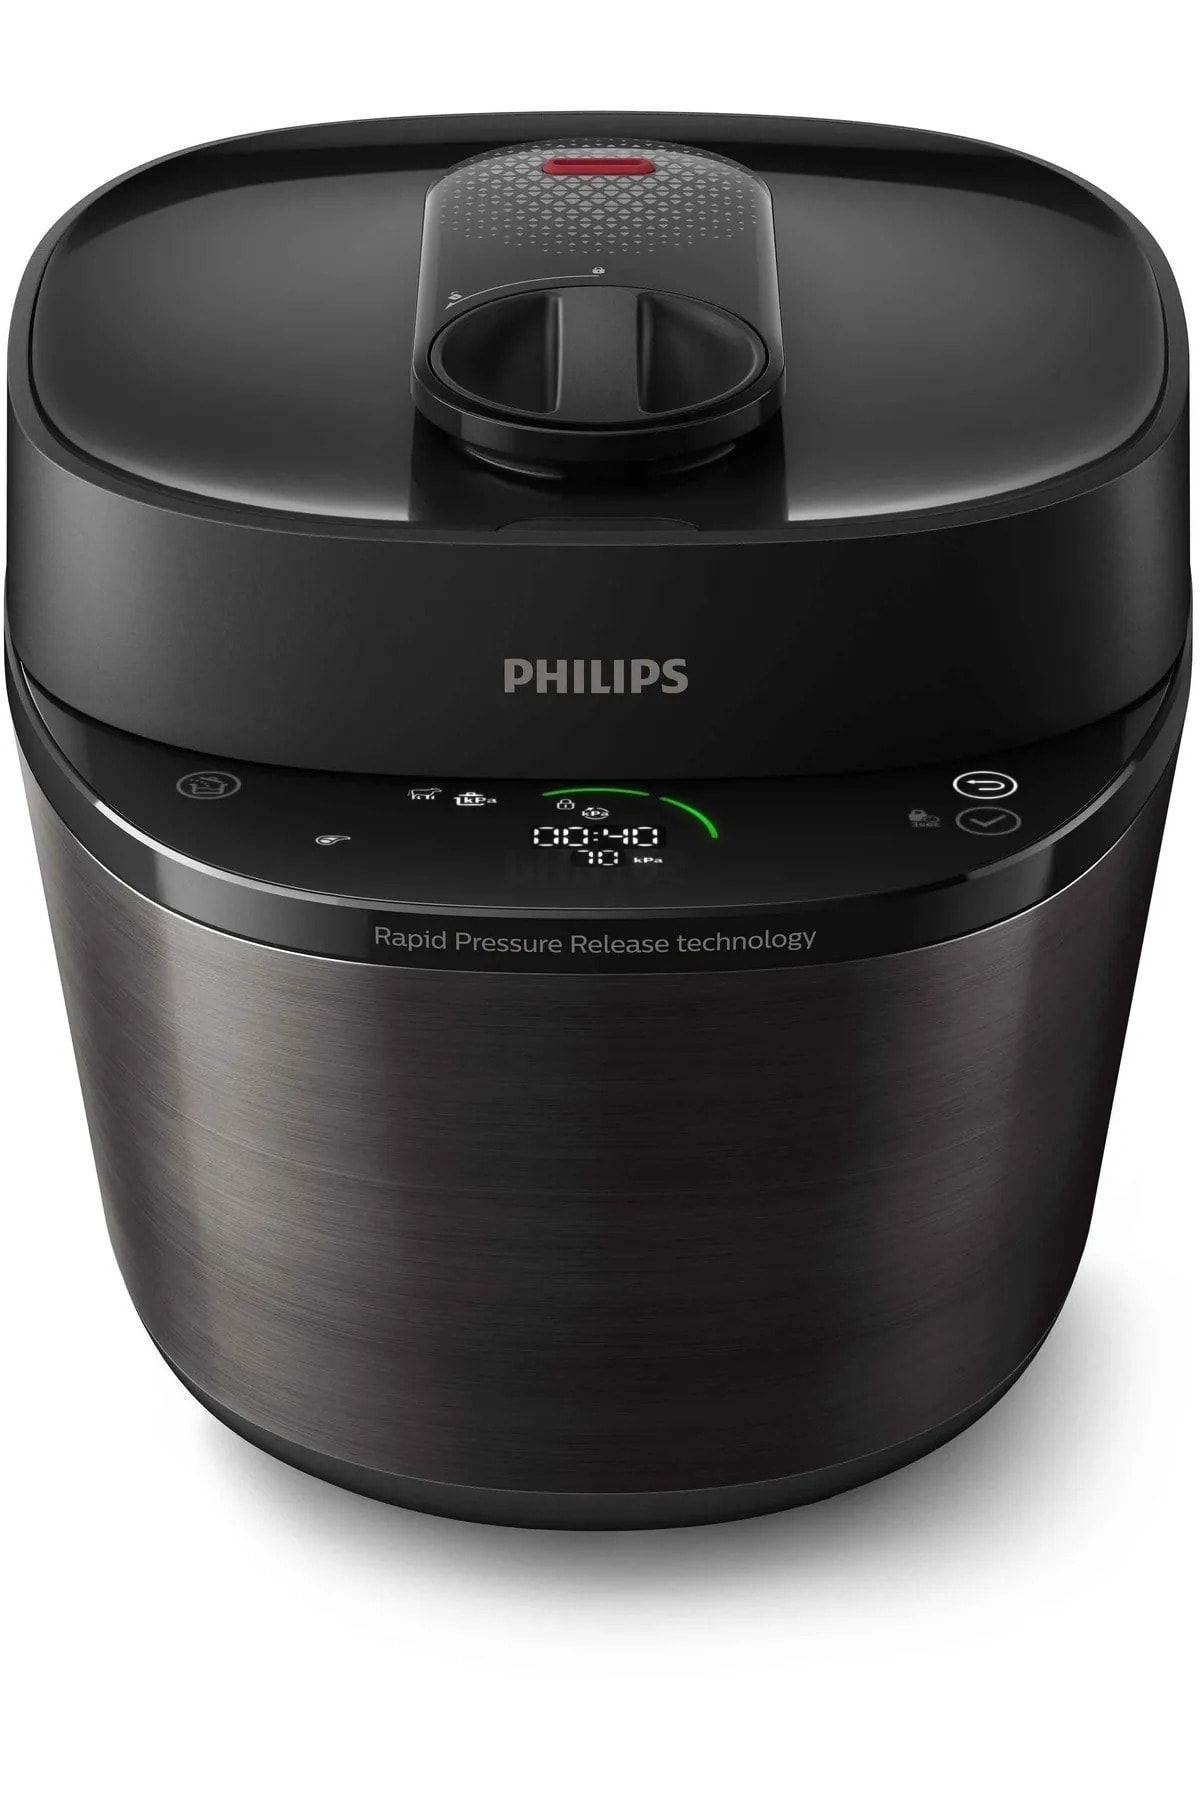 Philips Çok Amaçlı Basınçlı Pişirici, 5 L, Elektrikli Düdüklü Tencere, Siyah